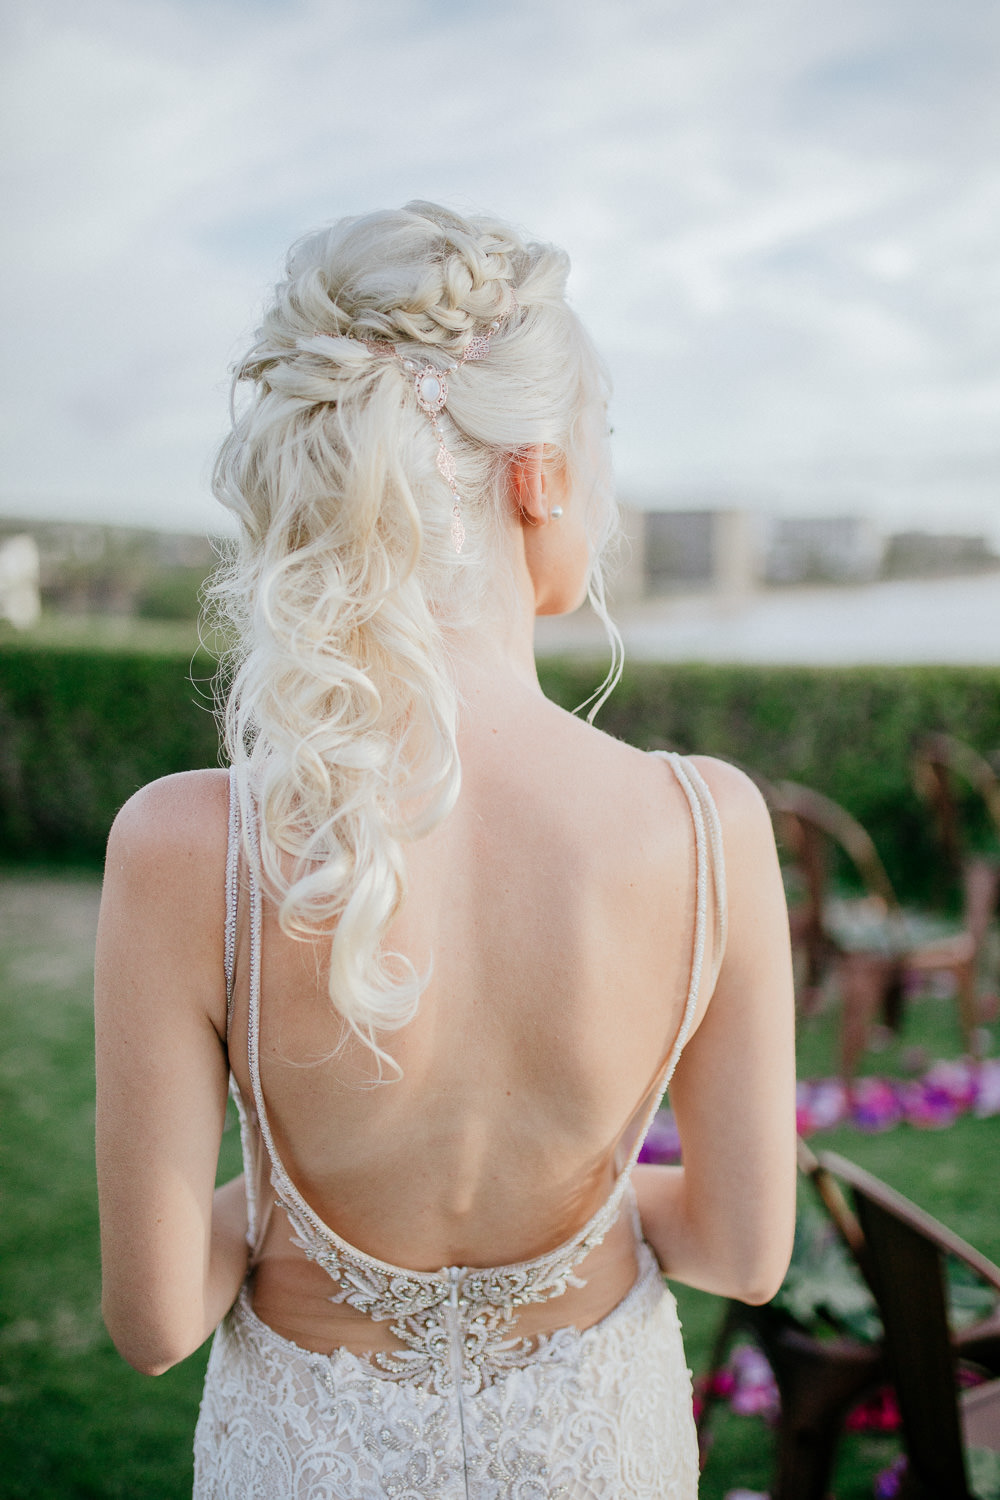 Maui wedding hair and makeup